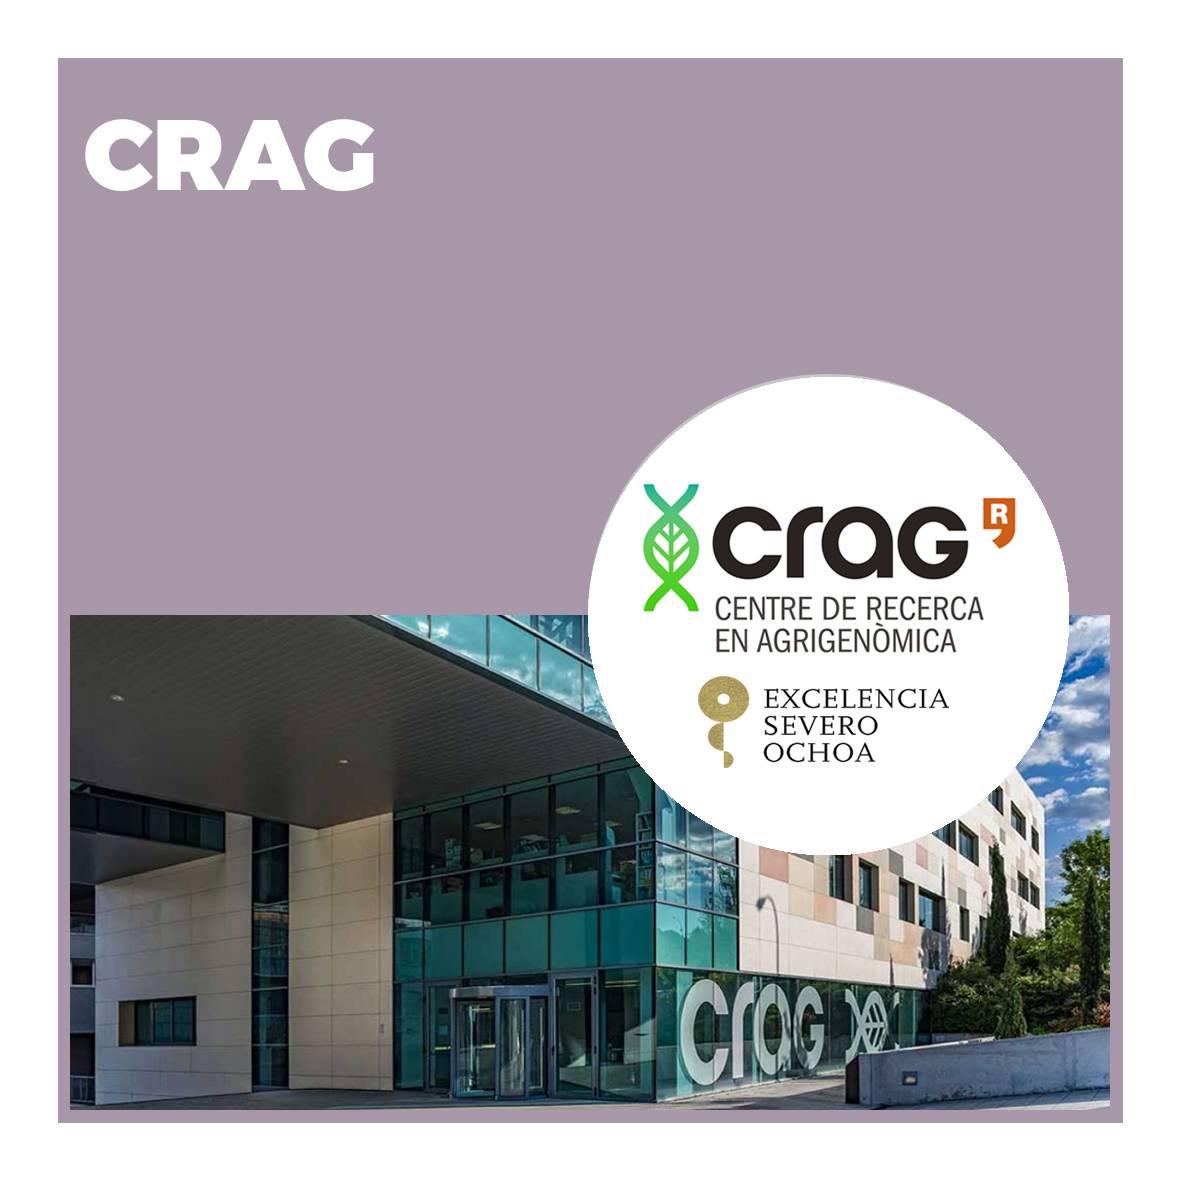 Centro de Investigación Agrigenómica (CRAG)